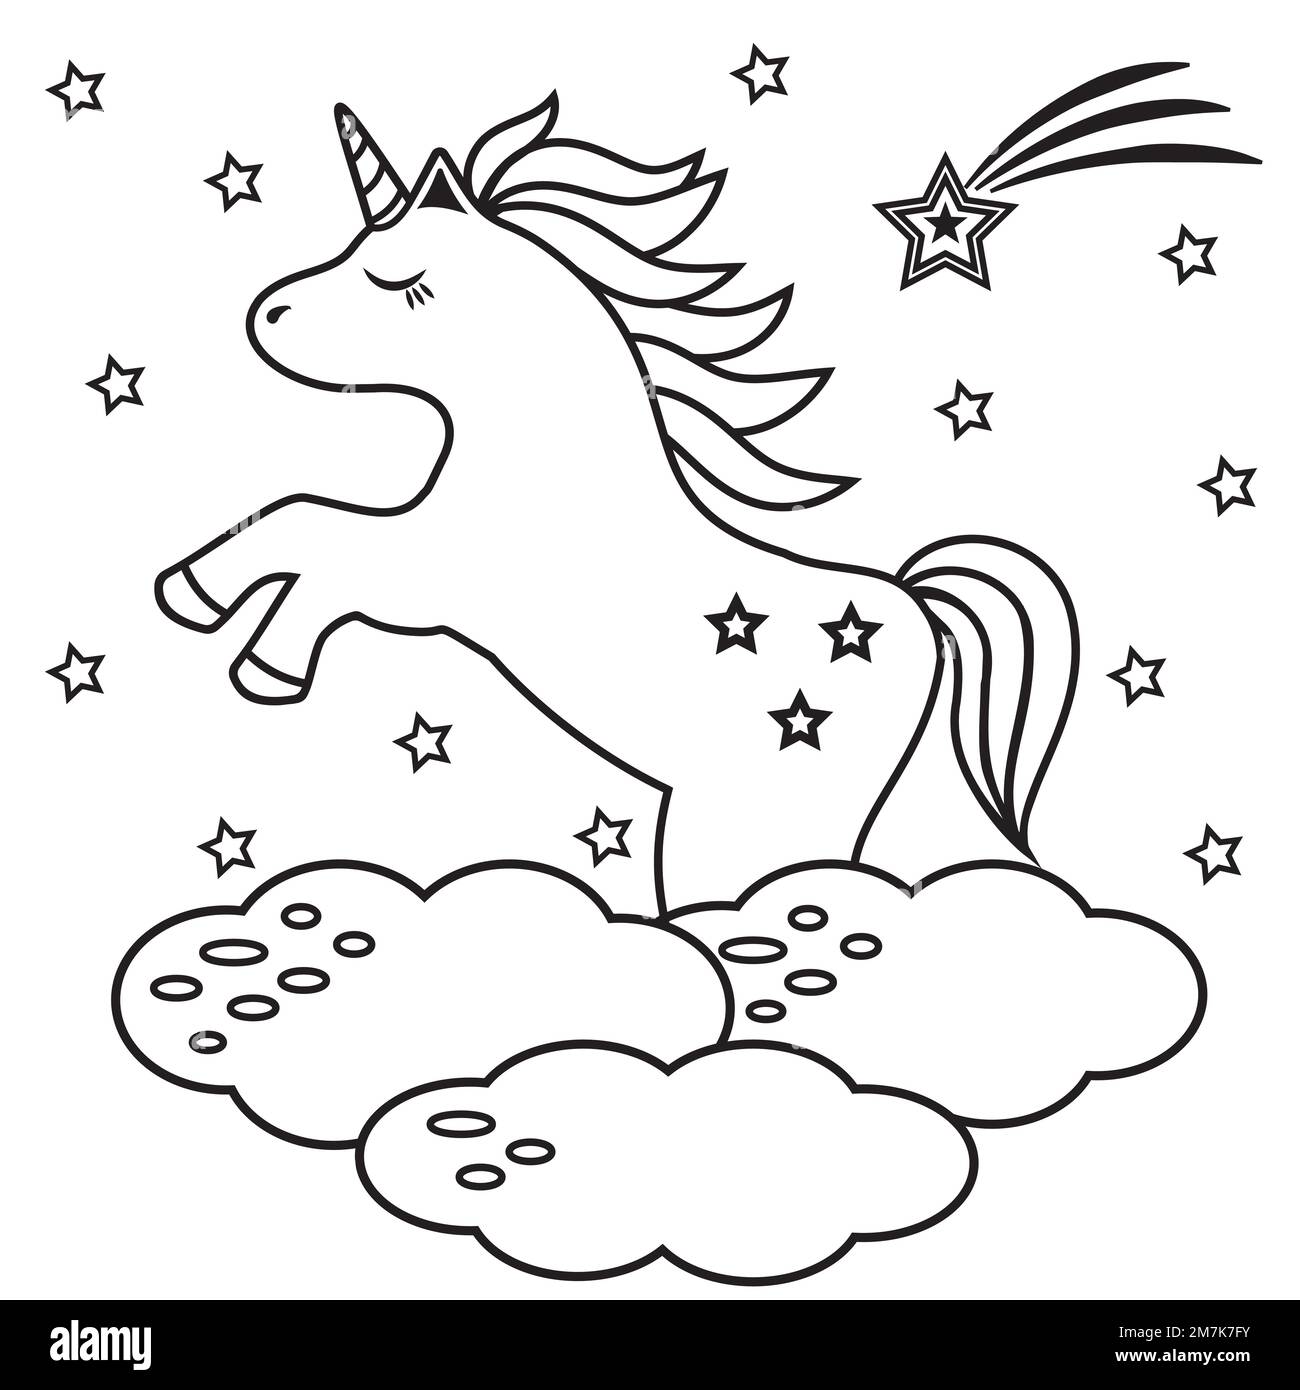 Unicornio feliz para colorear imãgen de stock en blanco y negro